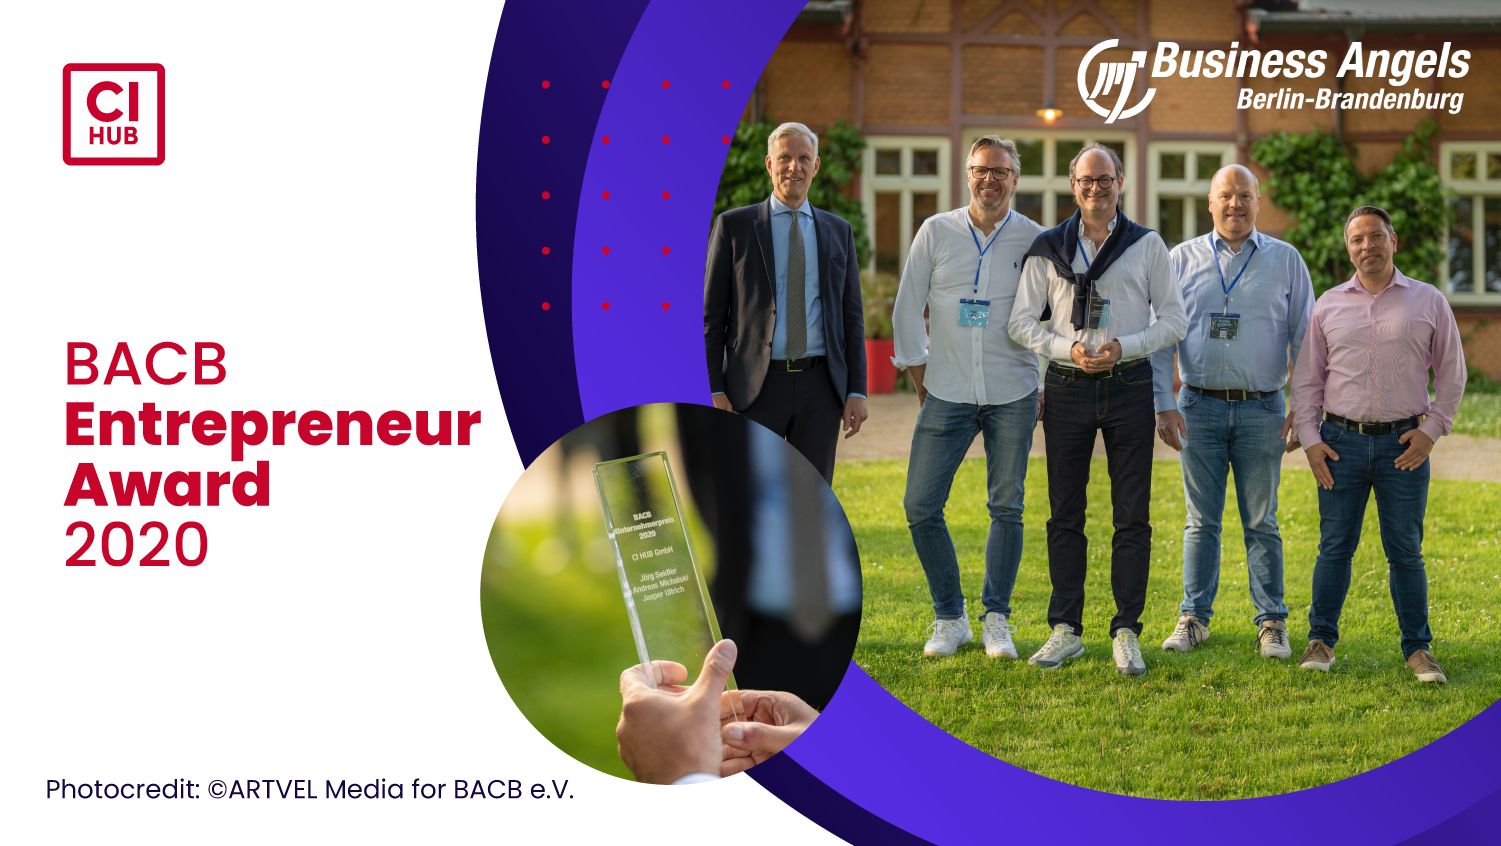 BACB Entrepreneur Awards 2020 & 2021: An award...